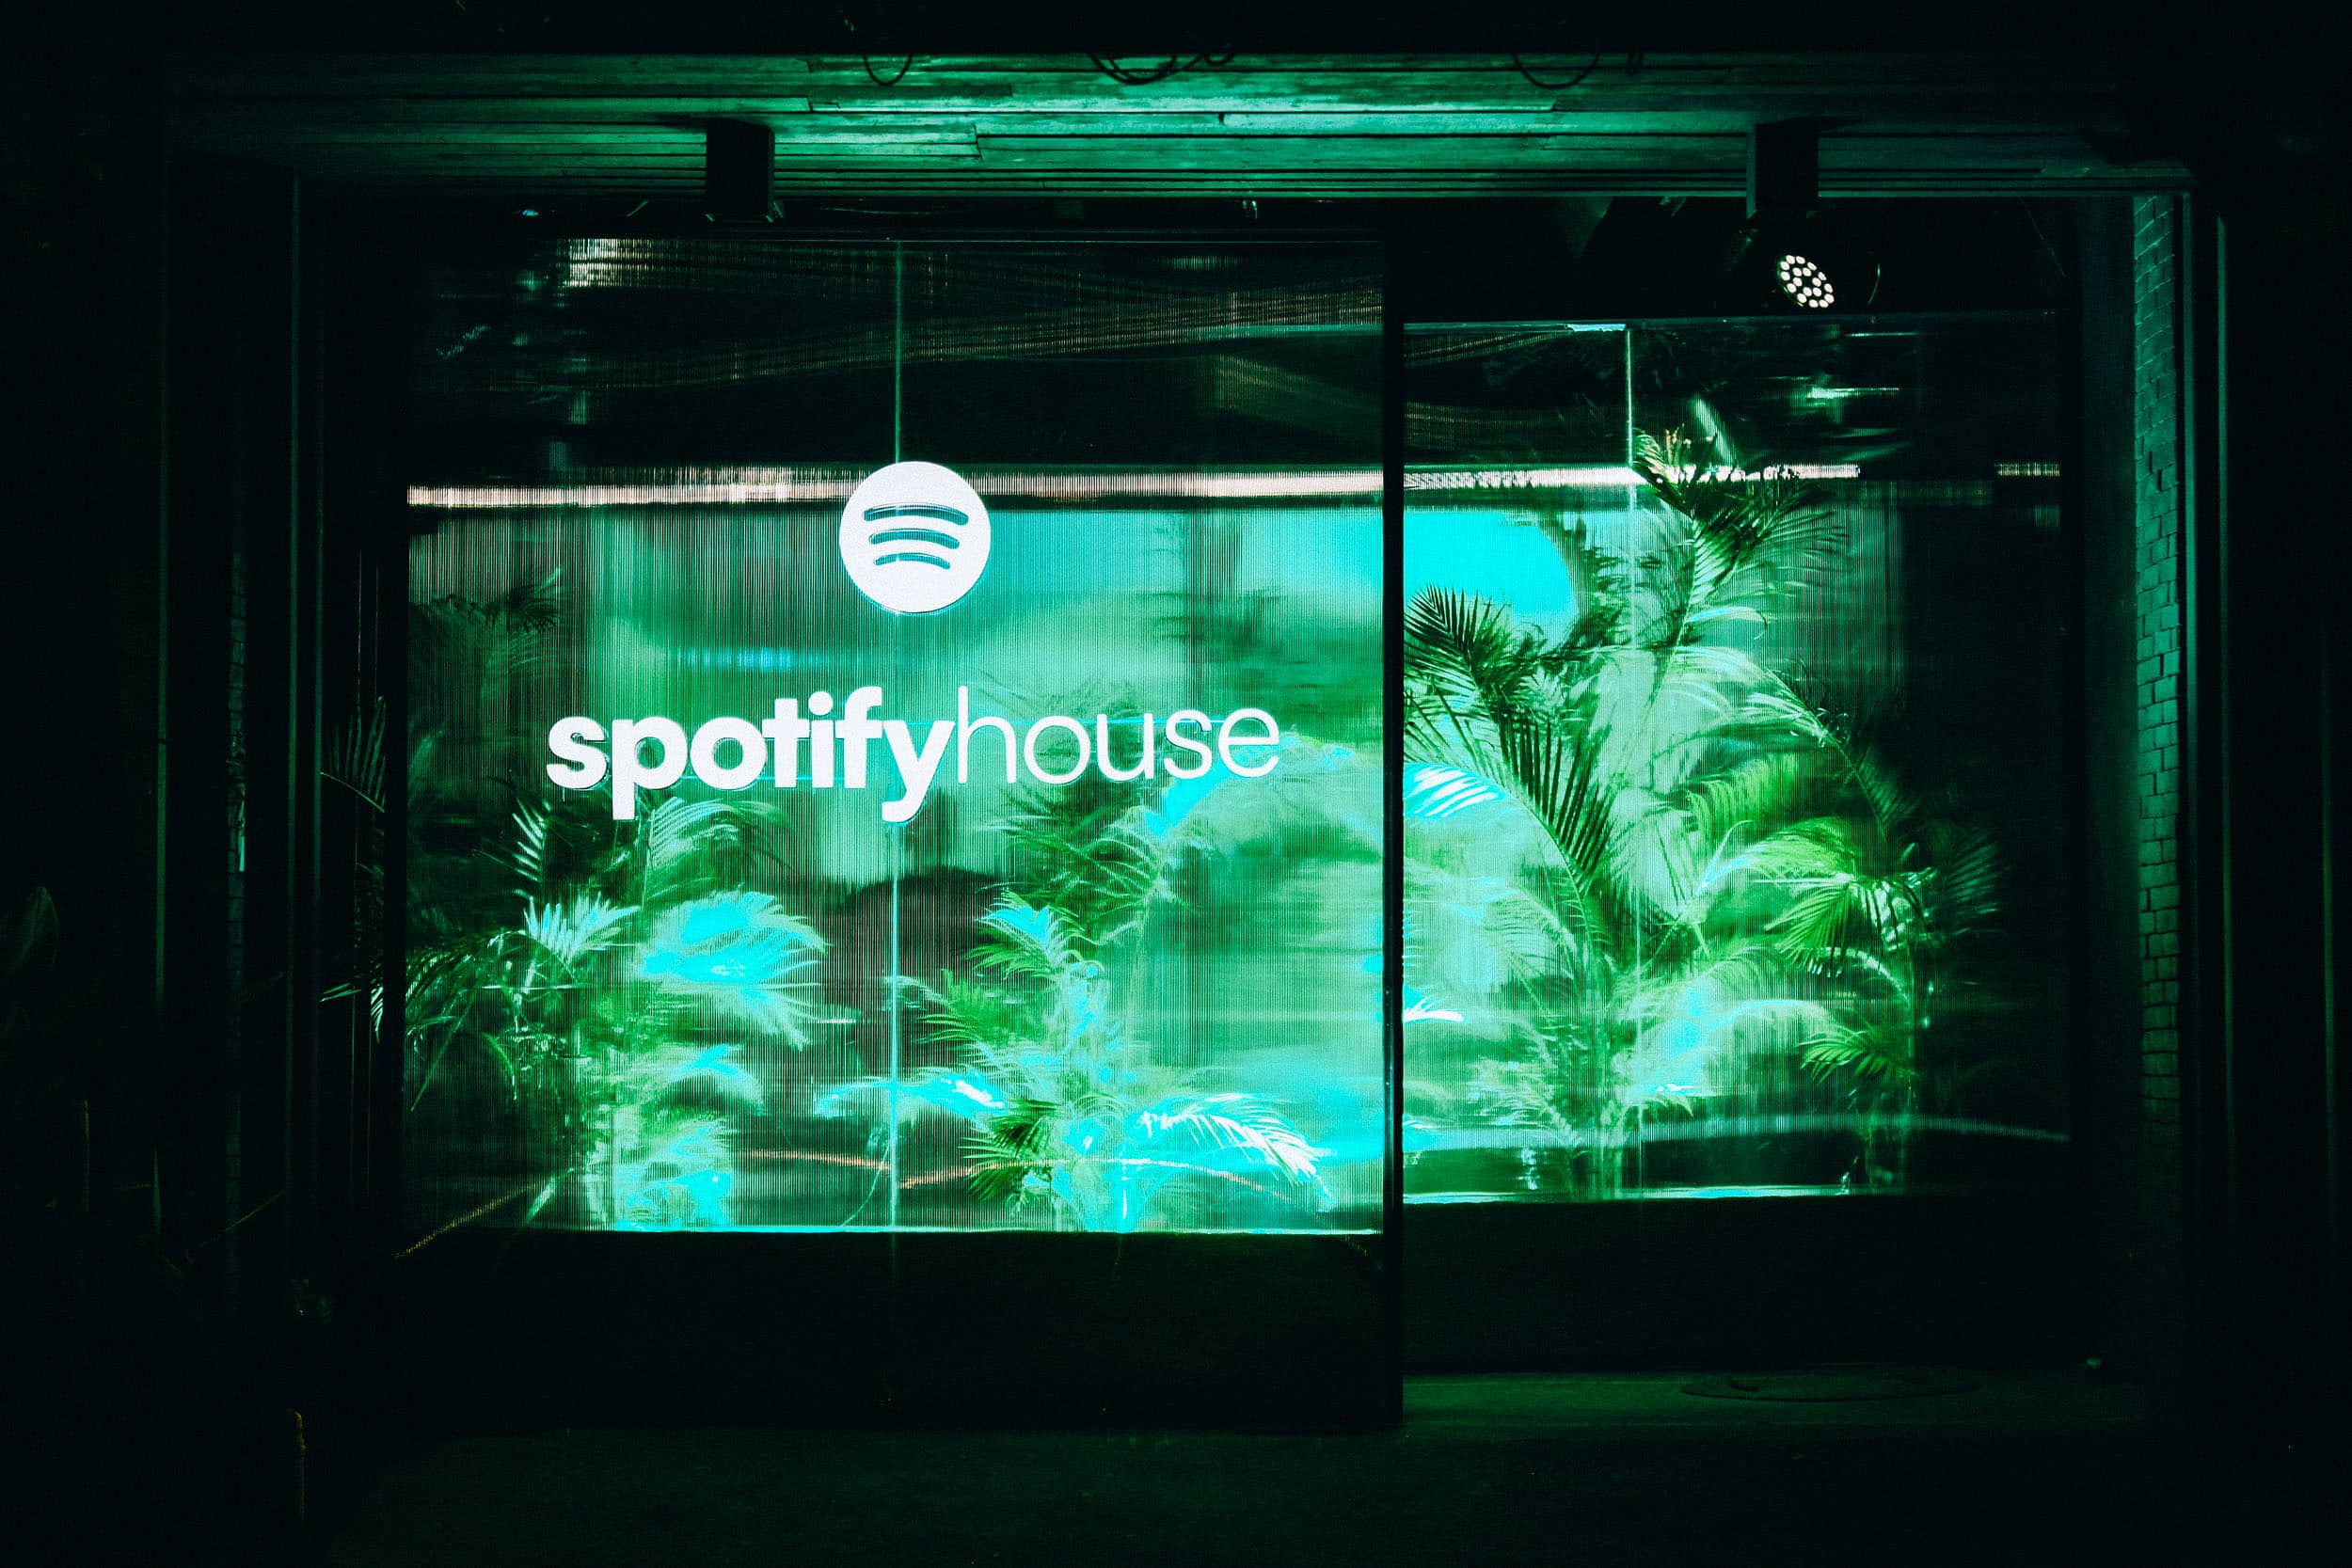 The Spotify House Facade